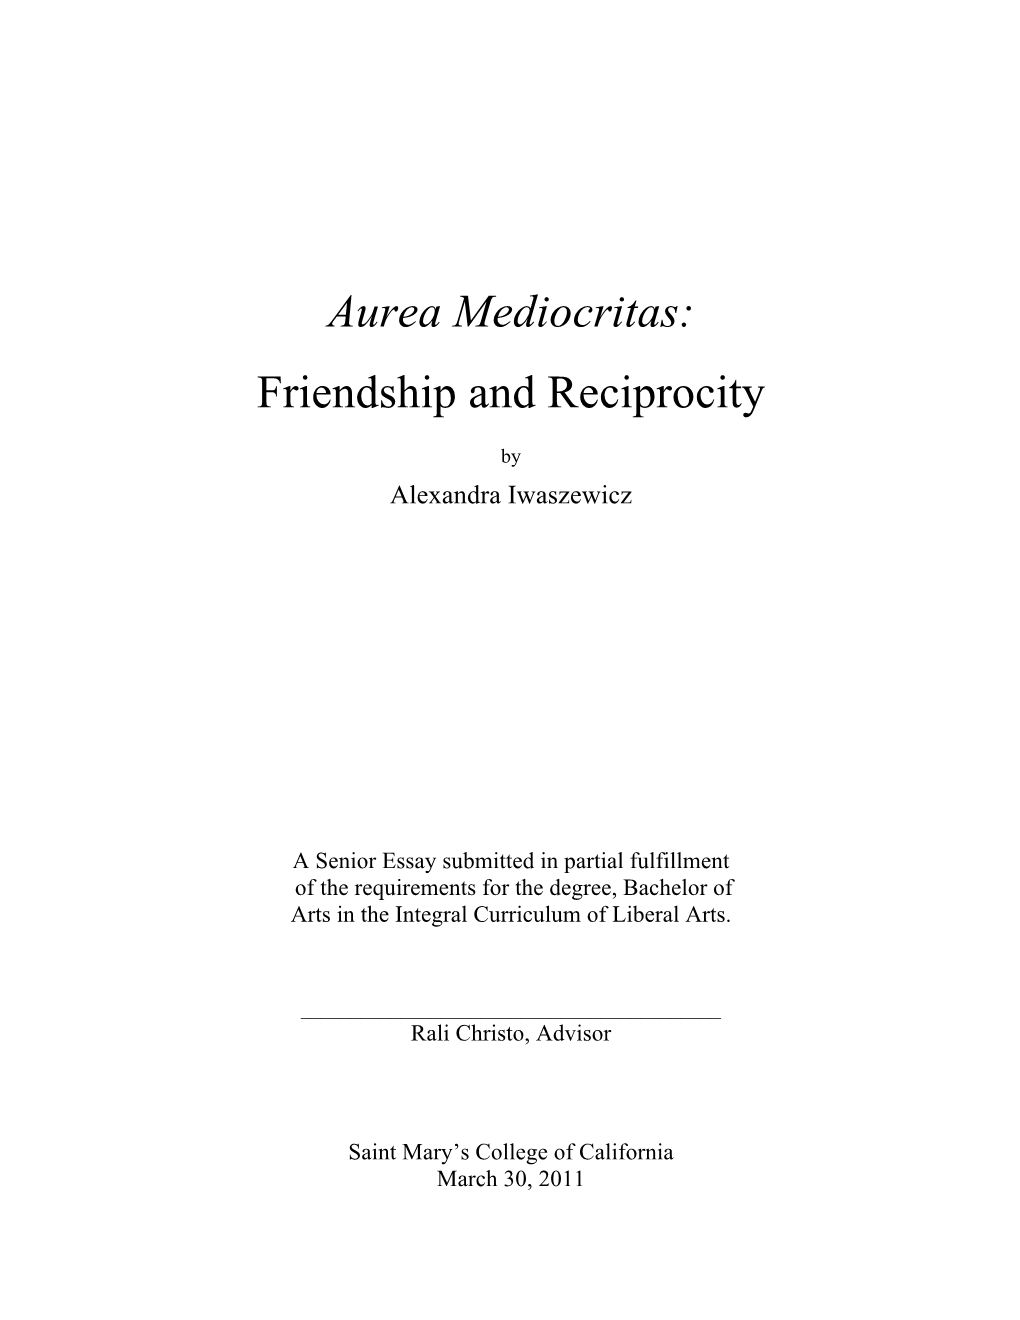 Aurea Mediocritas: Friendship and Reciprocity